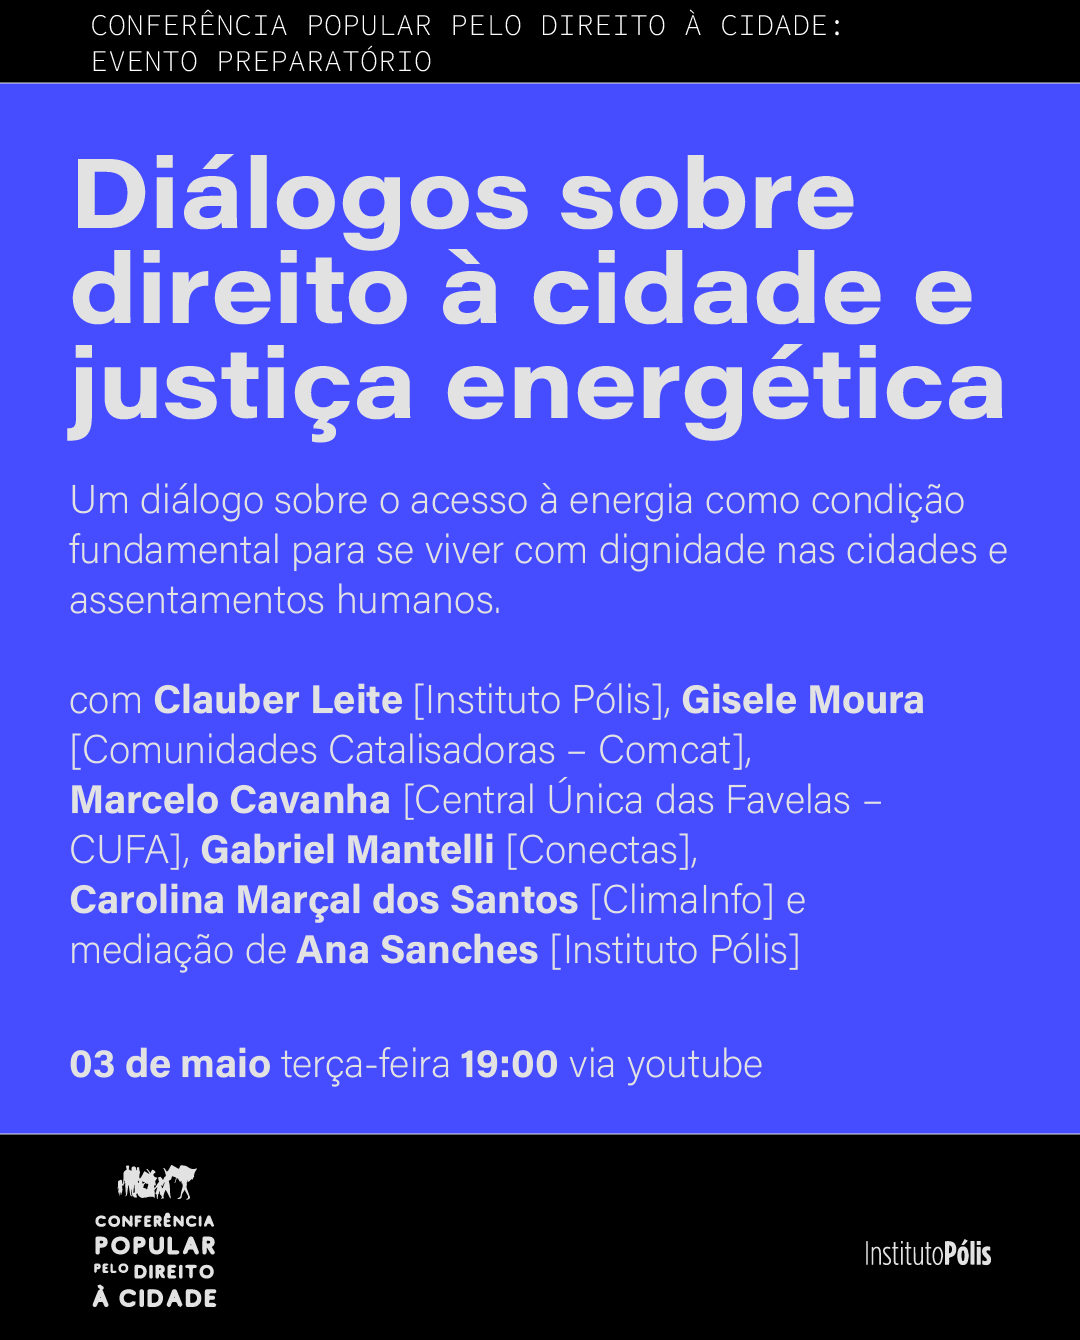 "Diálogos sobre Direito à Cidade e Justiça Energética" foi um encontro preparatório para a Conferência Popular pelo Direito à Cidade, que acontecerá em Junho 2022, em São Paulo.